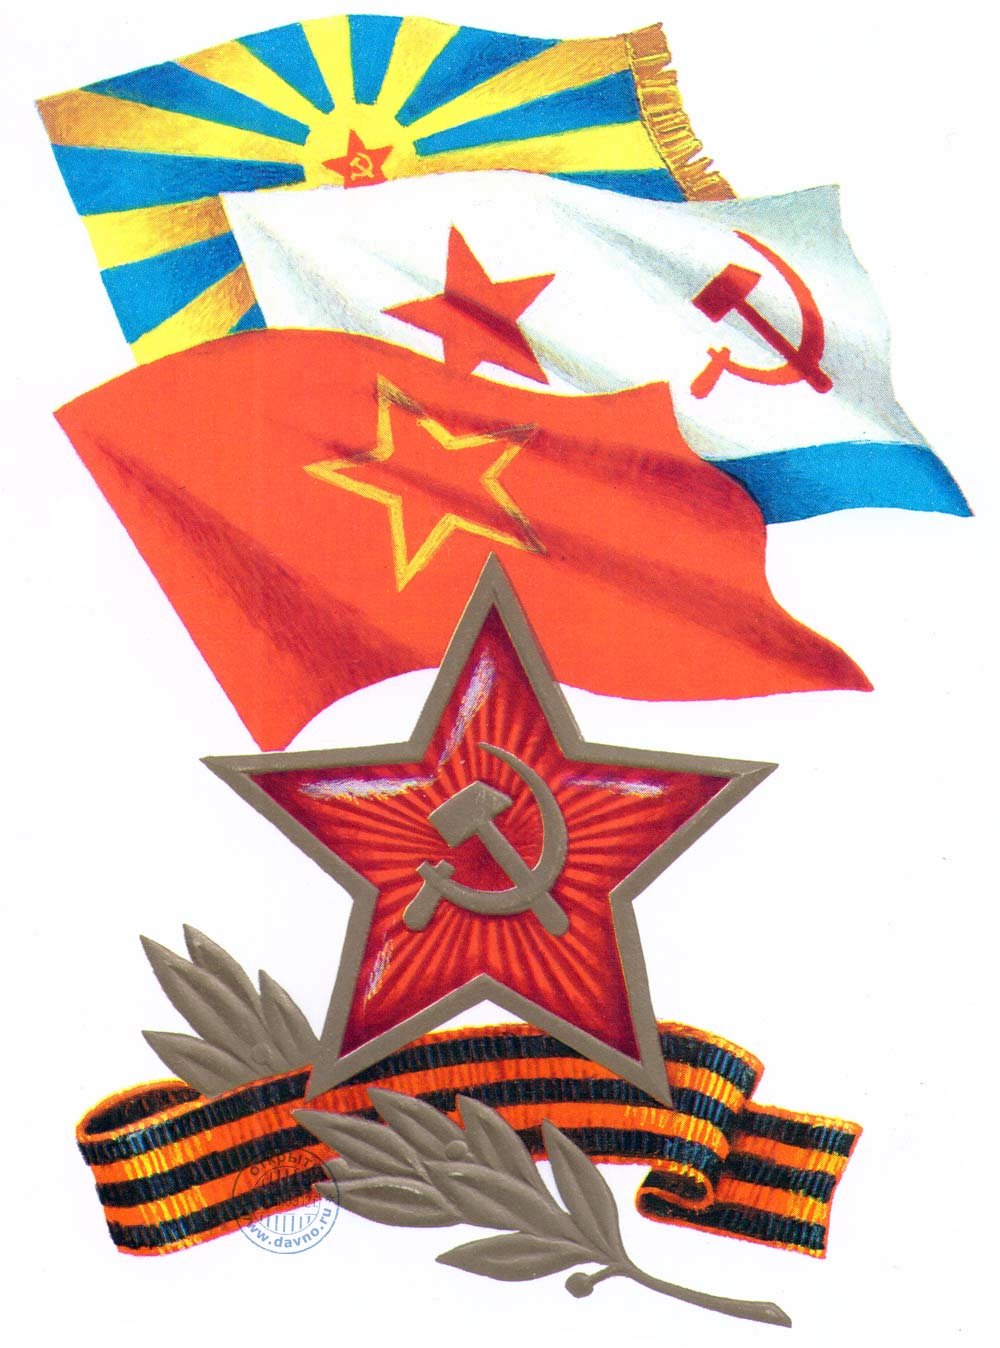 день советской армии военно морского флота